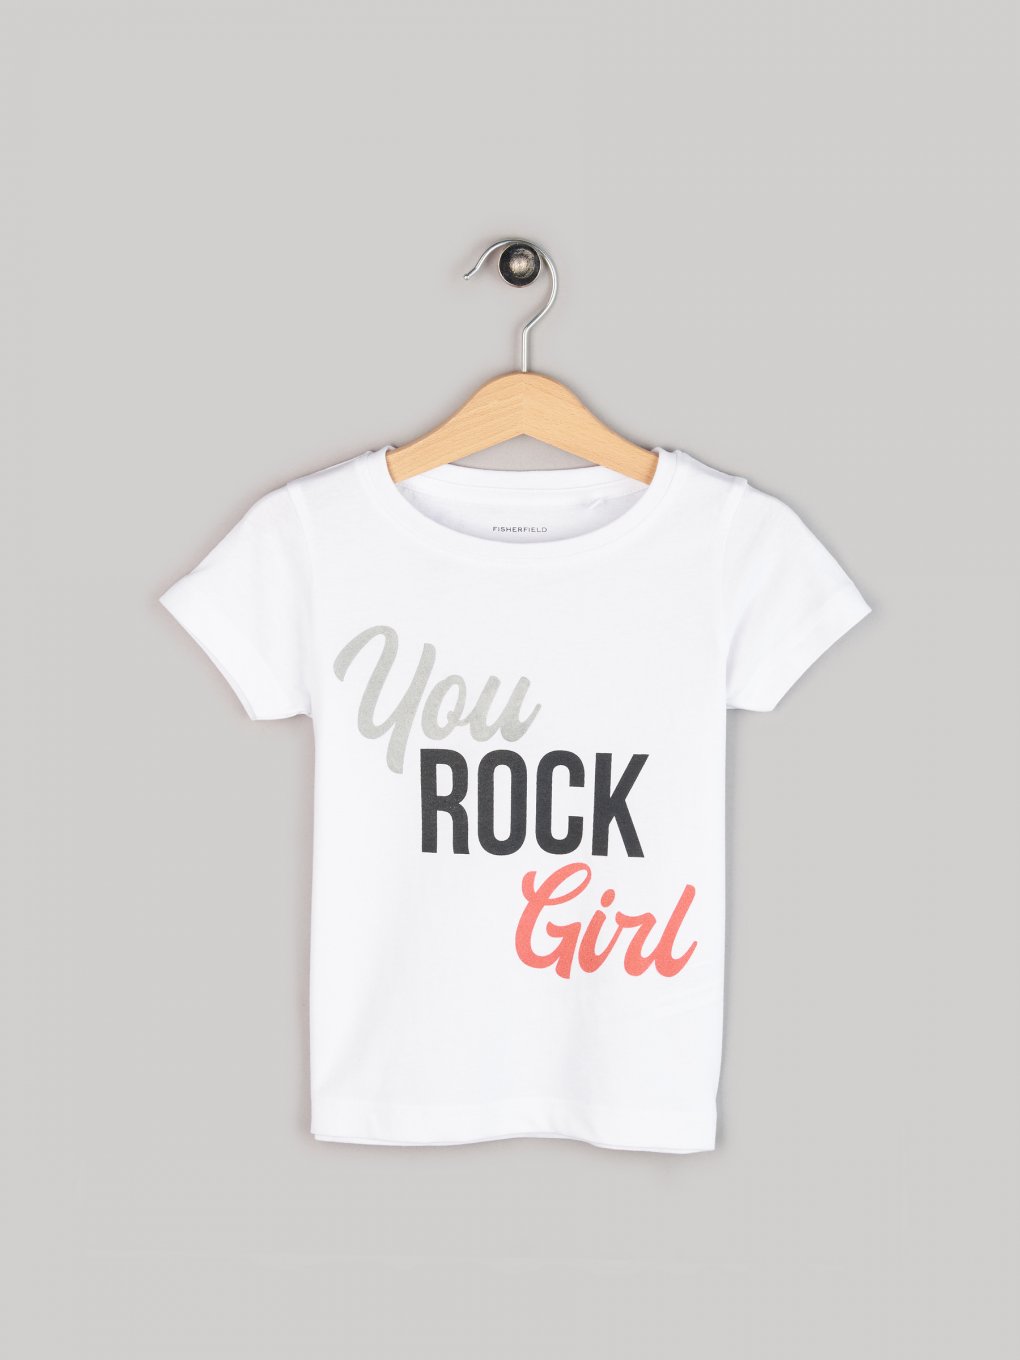 Bavlnené tričko s nápisom dievčenské